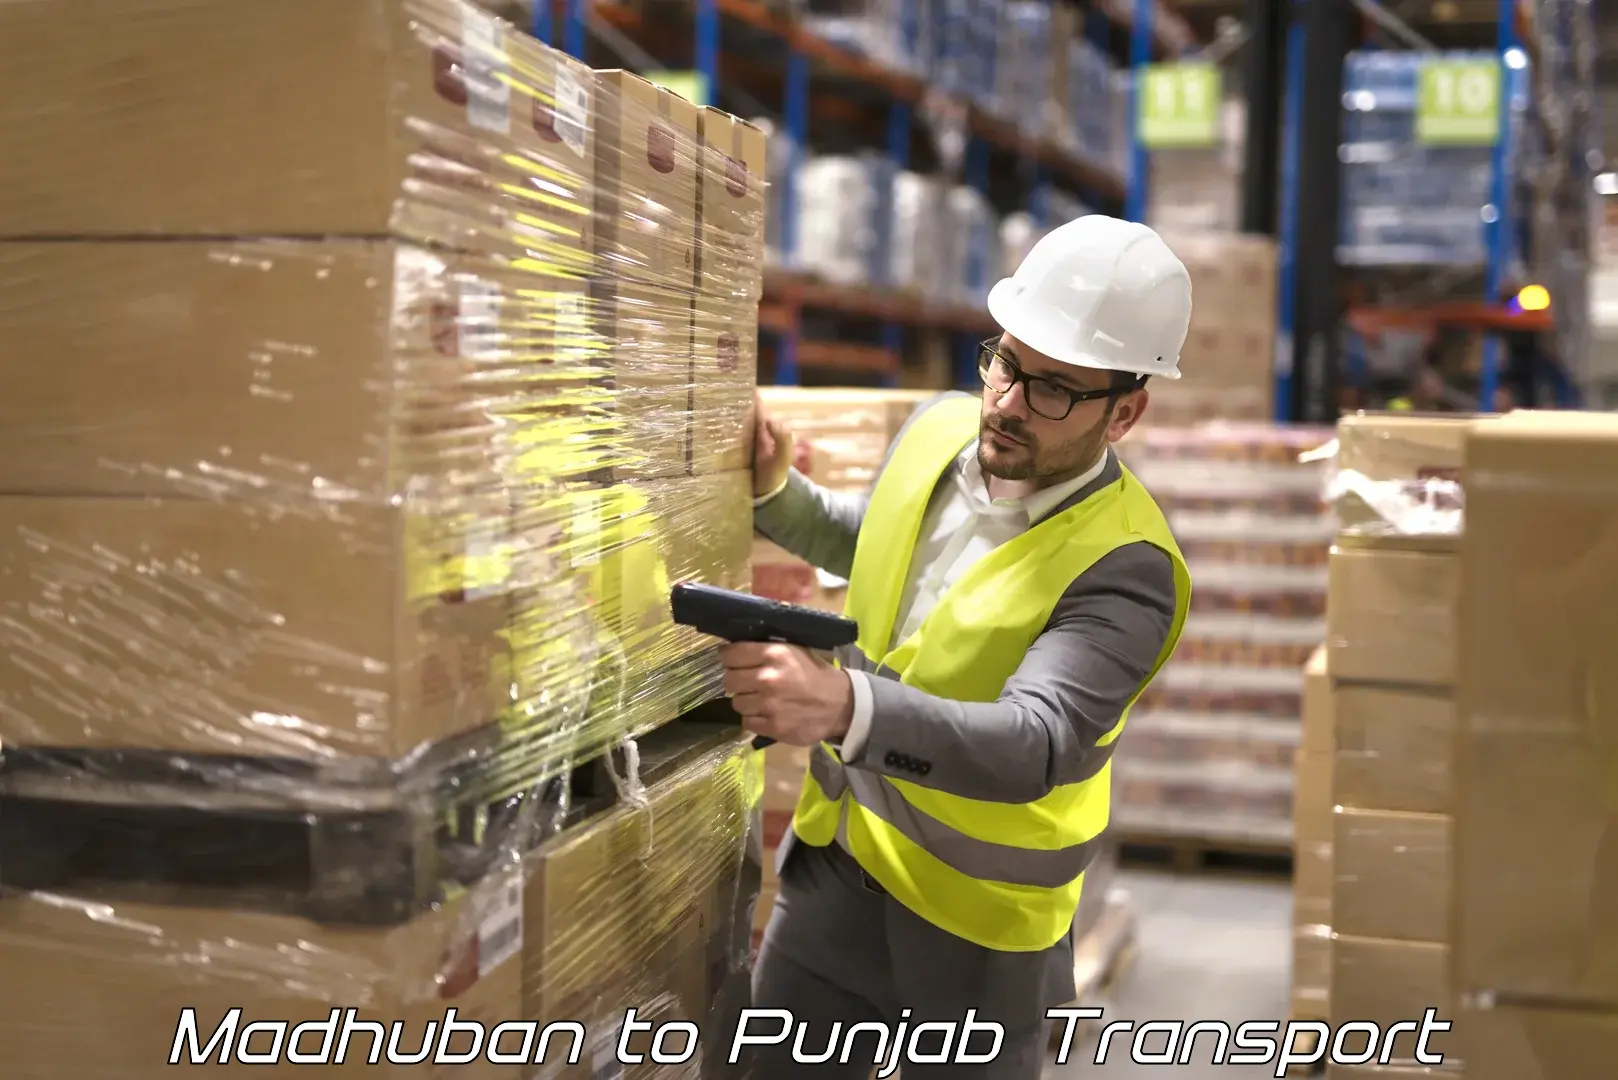 Online transport booking Madhuban to Punjab